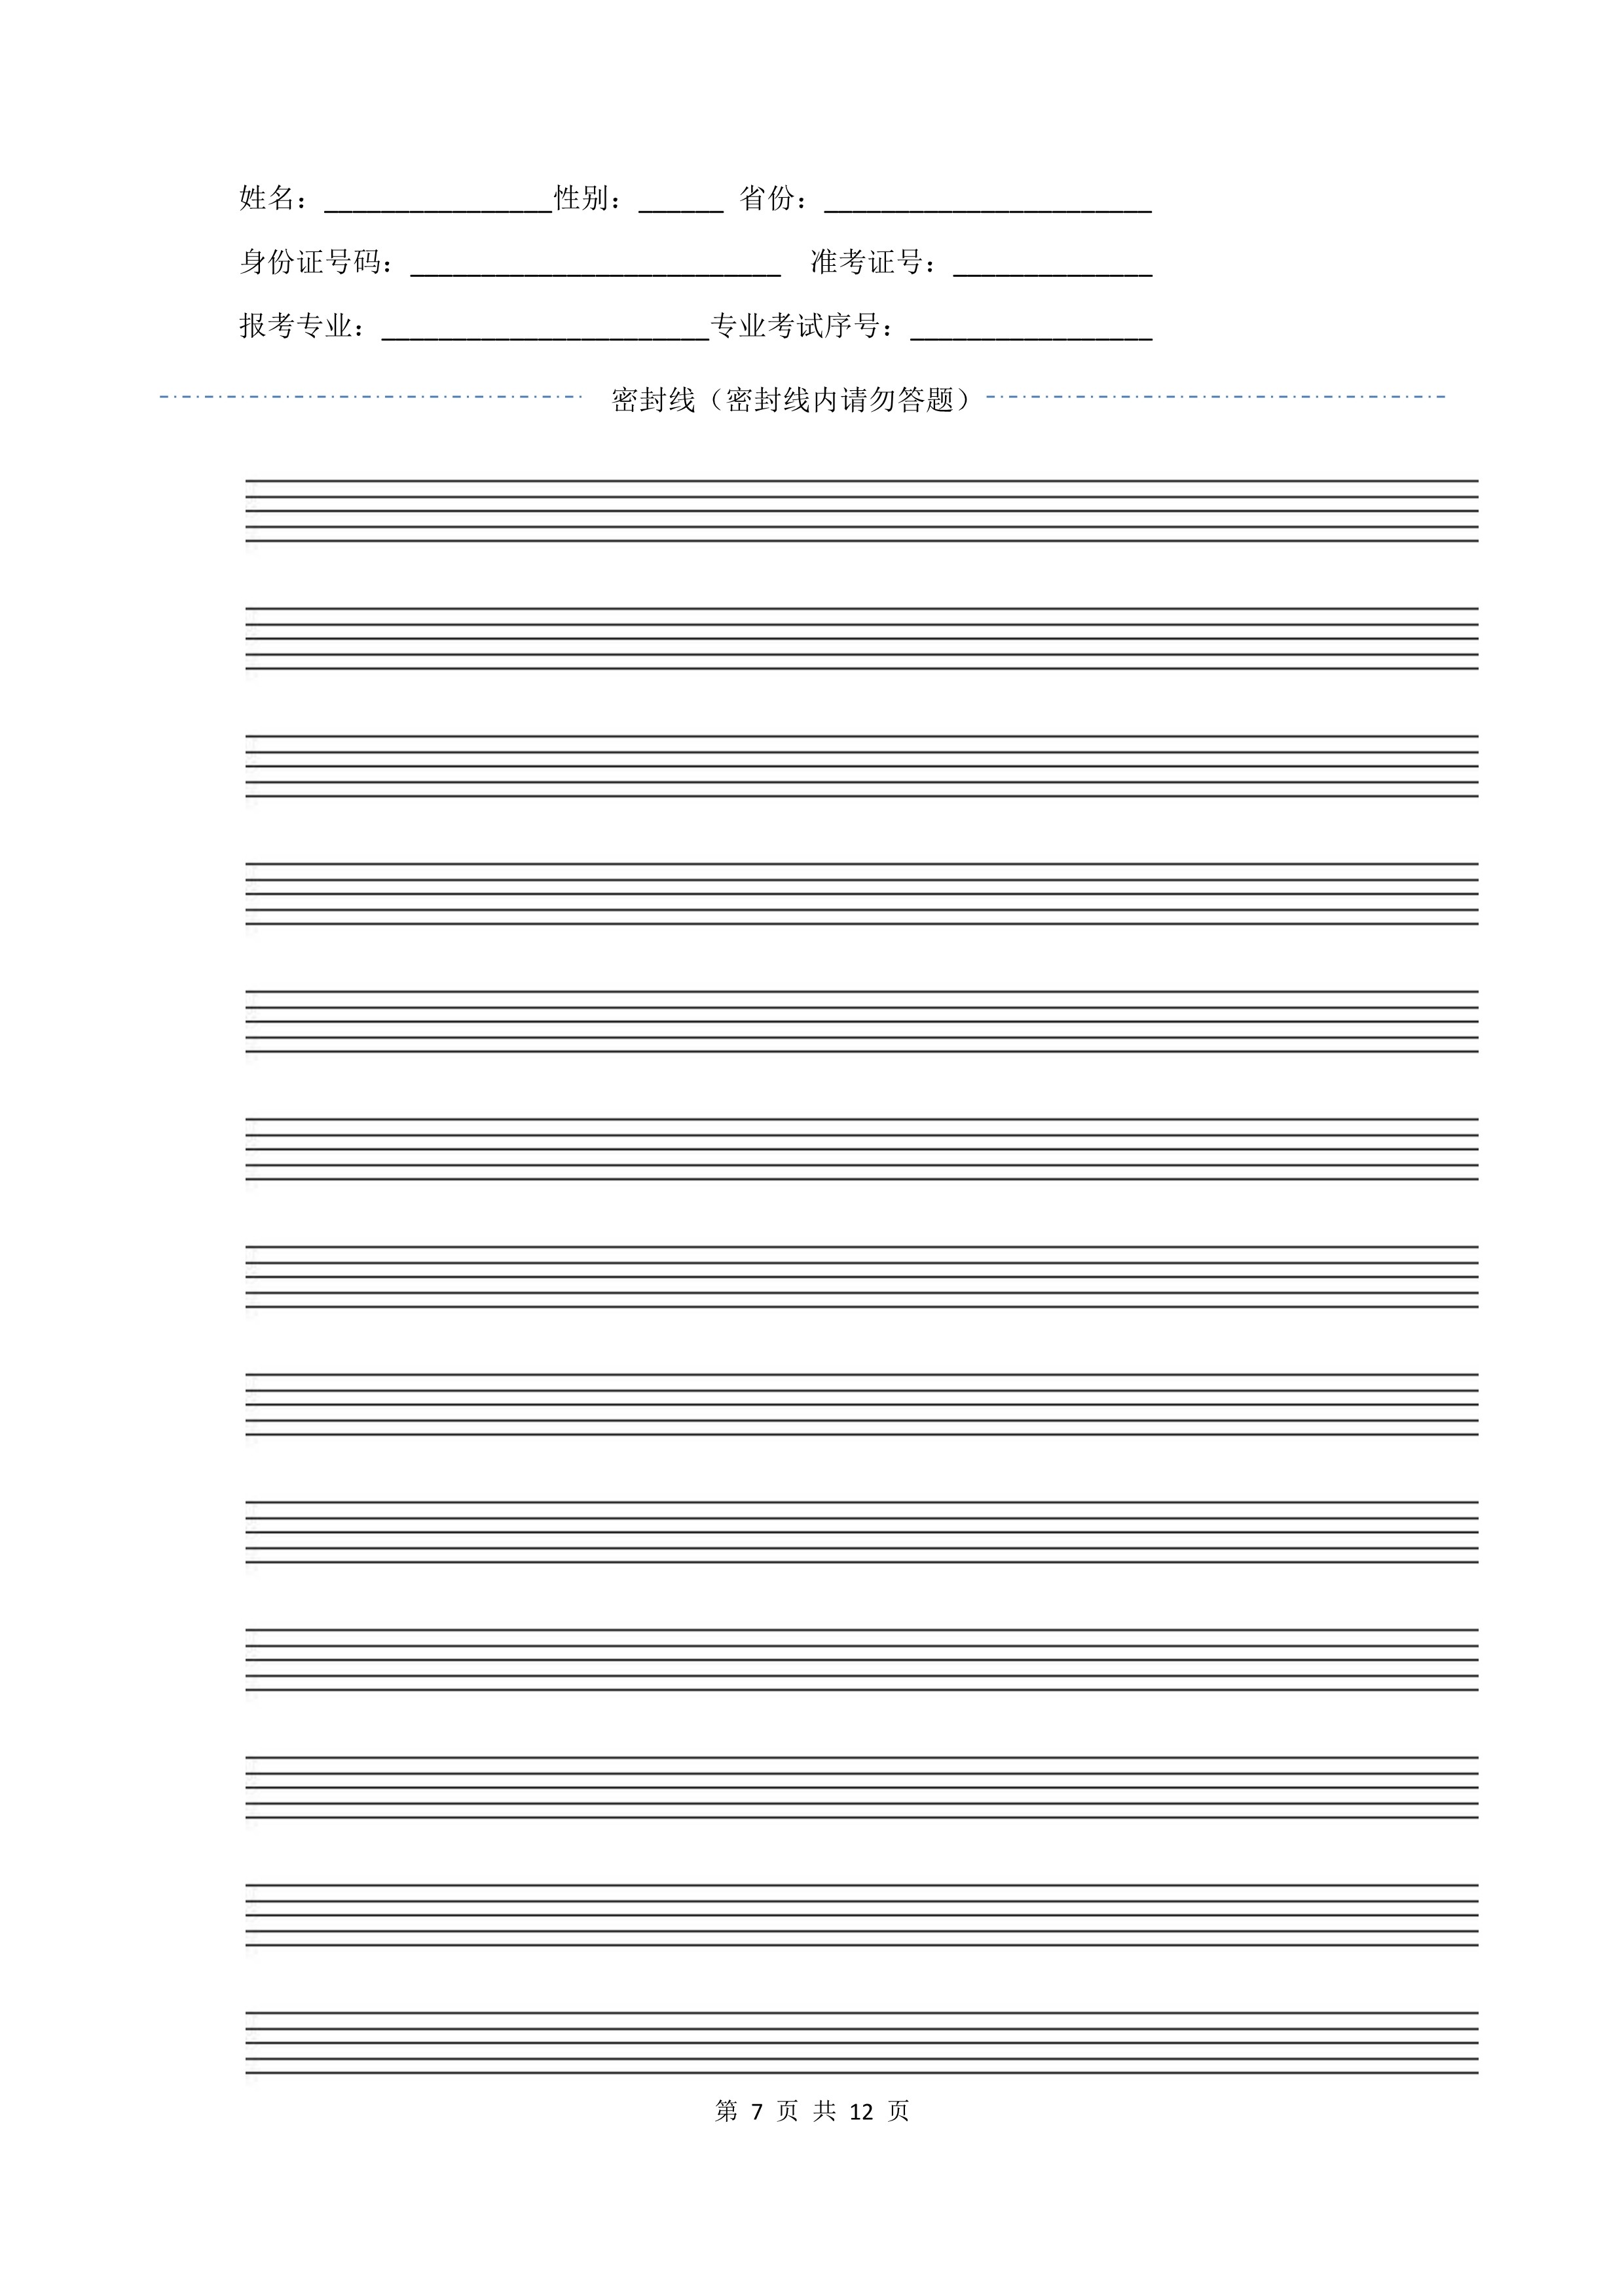 南京艺术学院2022年本科招生作曲与作曲技术理论、作曲与作曲技术理论（计算机作曲）专业《器乐曲写作》科目考试答题纸及草稿纸_7 - 副本.jpg